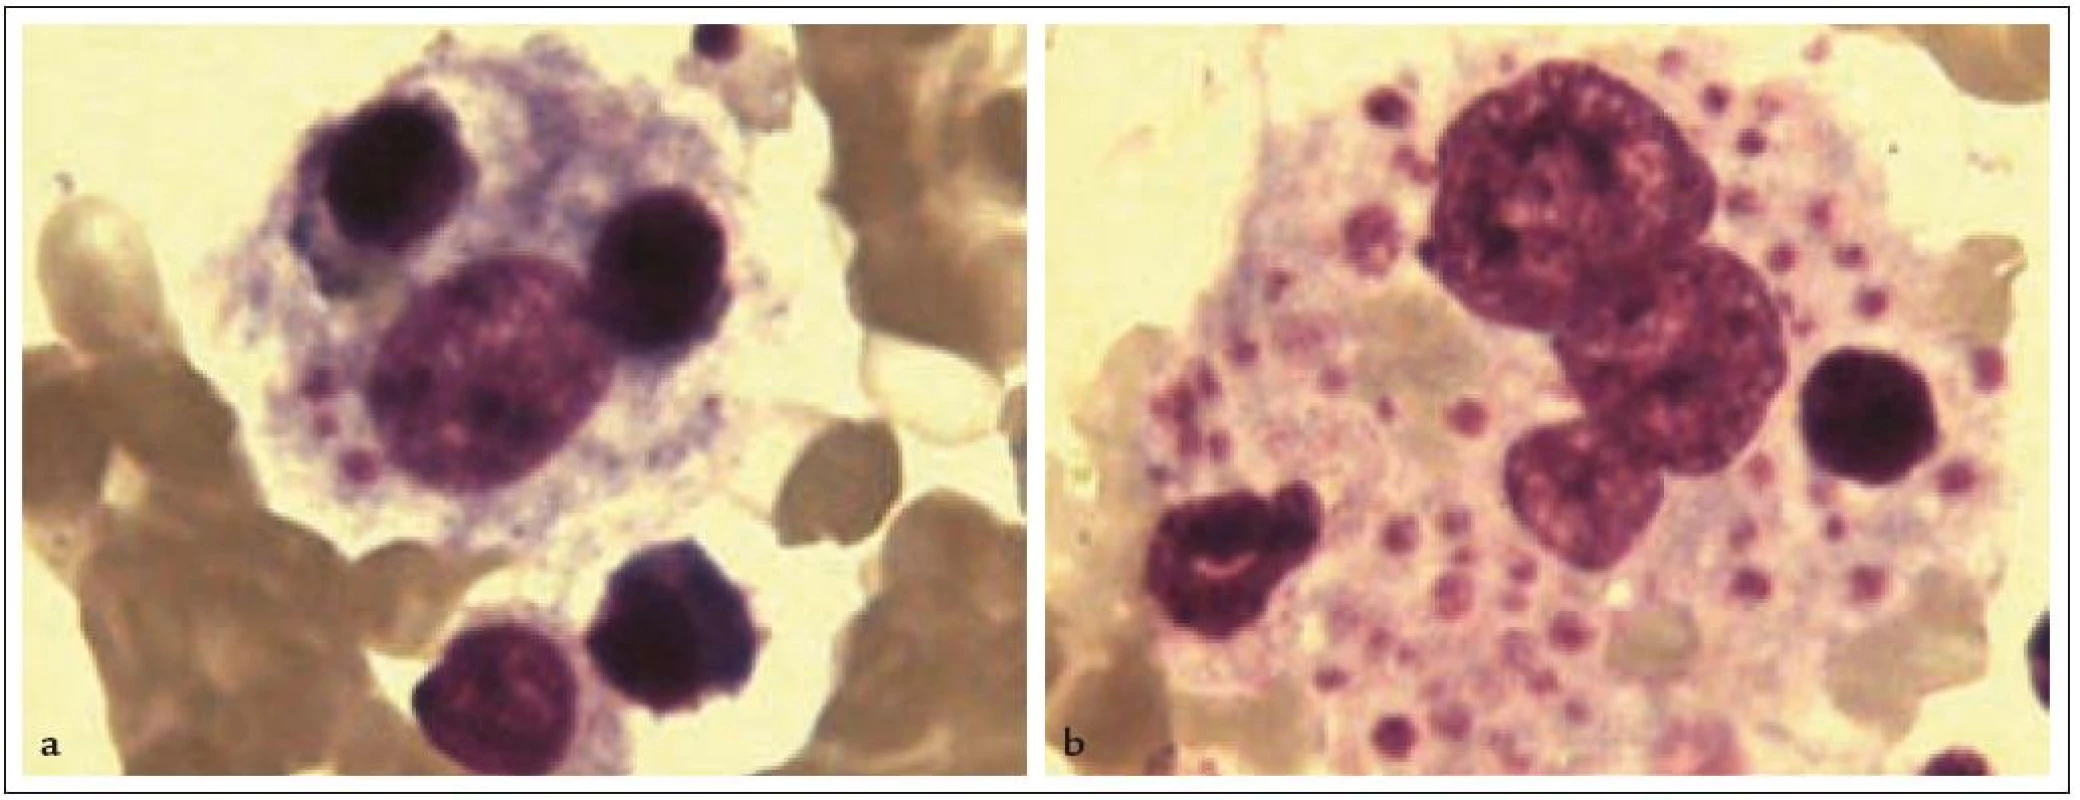 Hemofagocytující makrofágy v kostní dřeni (barvení dle Pappenheima, zvětšeno 1 000krát).
1a: Makrofág s fagocytovaným mononukleárem, holým jádrem a destičkami.
1b: Makrofág s fagocytovanými destičkami, erytrocyty a jádry krvinek.